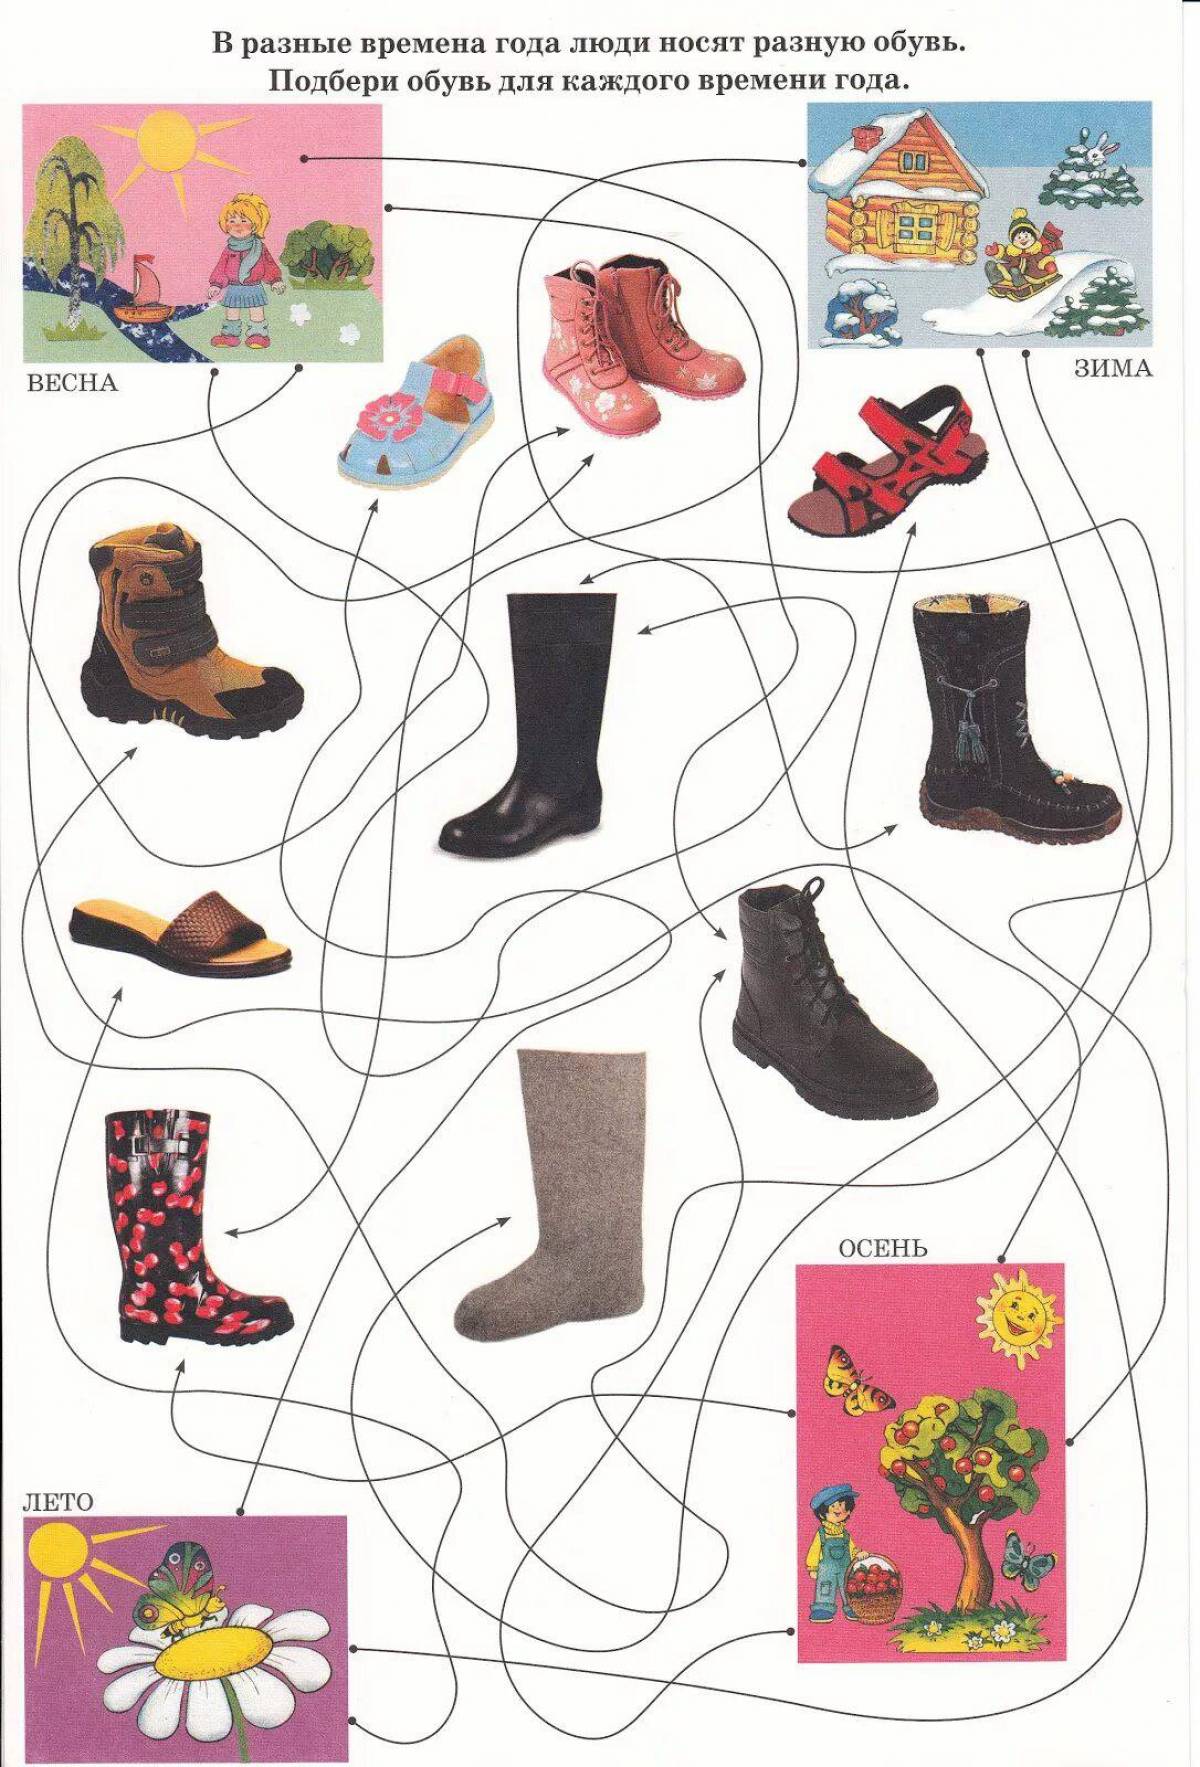 одежда и обувь картинки для детского сада